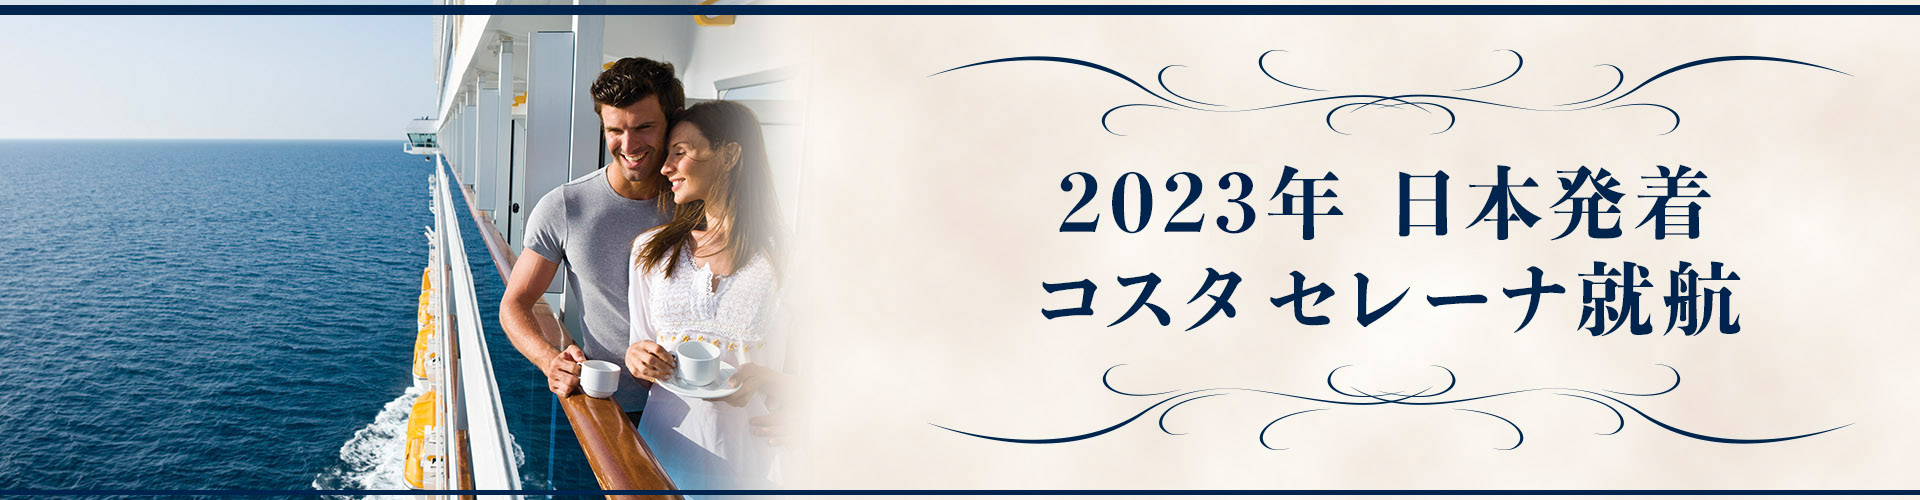 2023年日本発着コスタネオロマンチカ就航